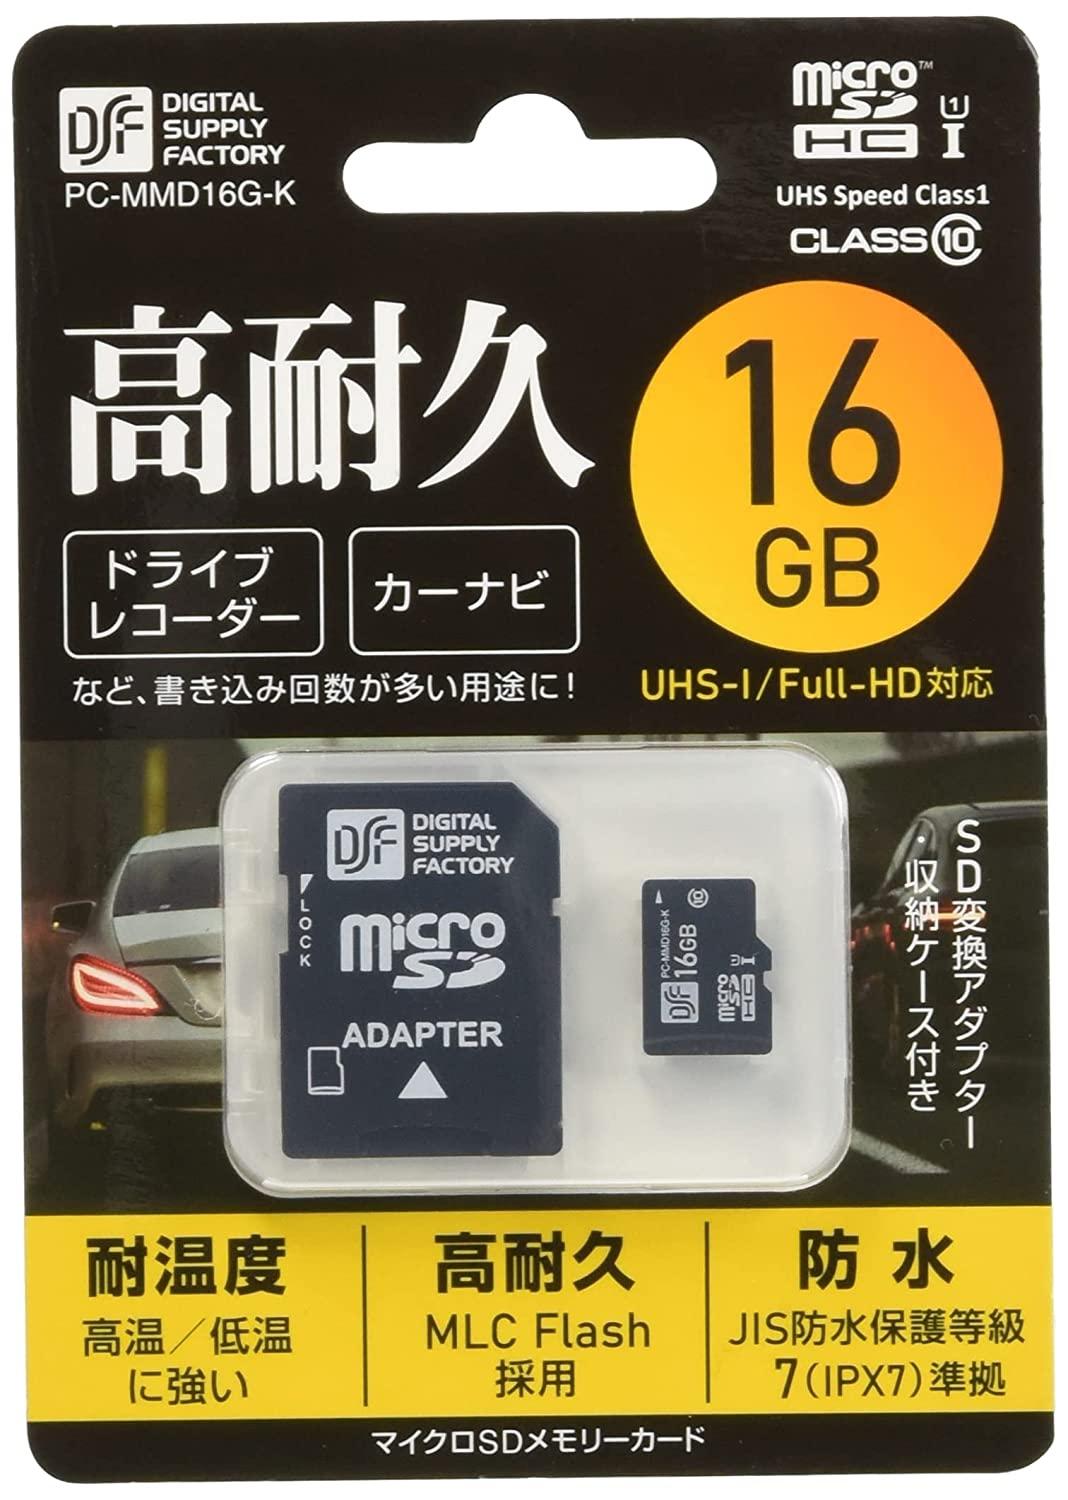  マイクロSDHCメモリーカード(16GB/防水性能IPX7防浸形/CLASS10/ブラック) PC-MMD16G-K